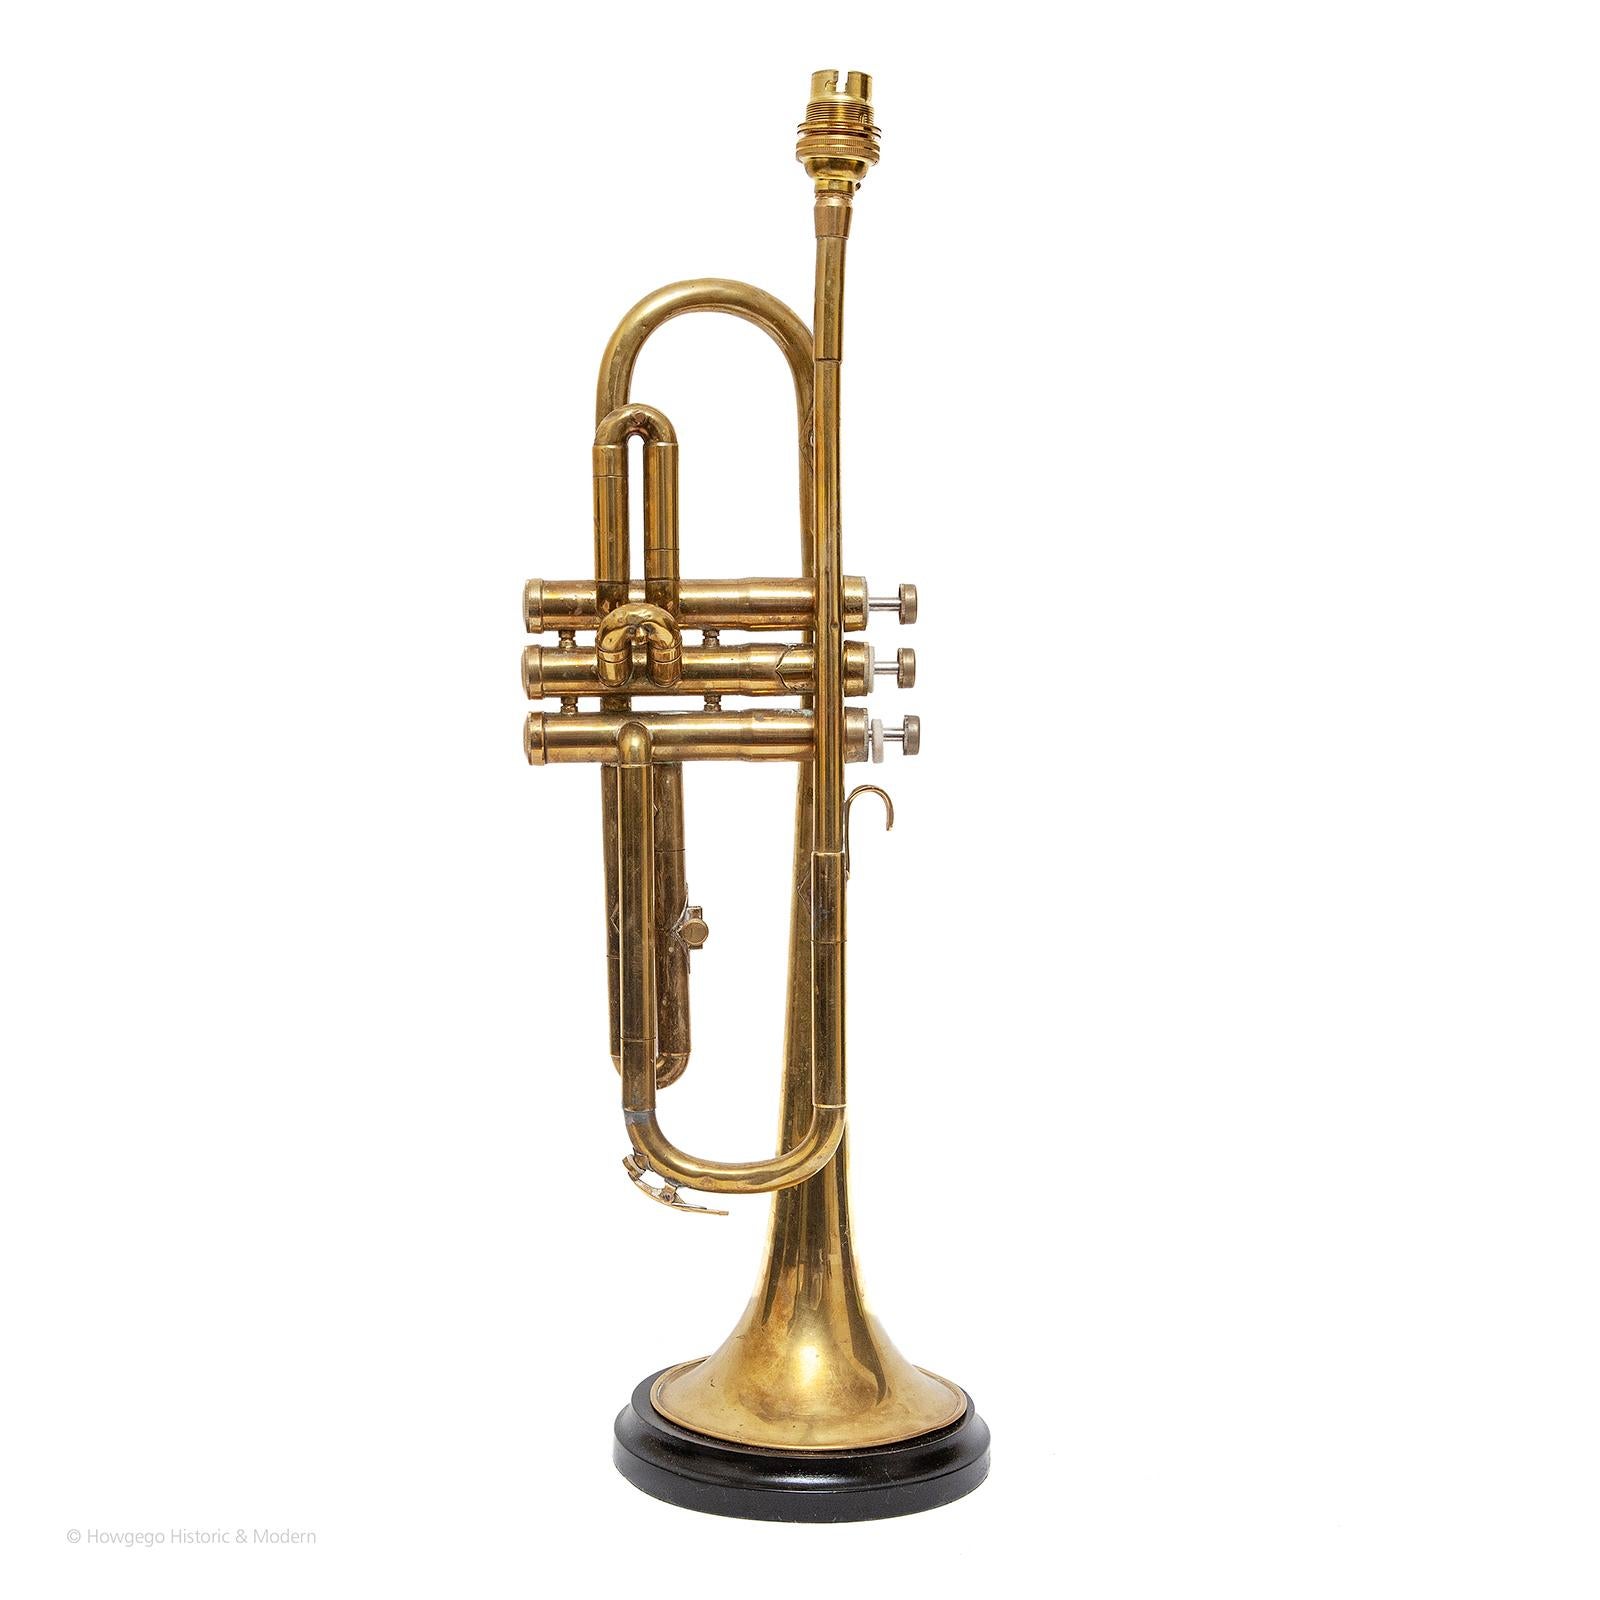 Vieille lampe de table en forme de trompette, 22